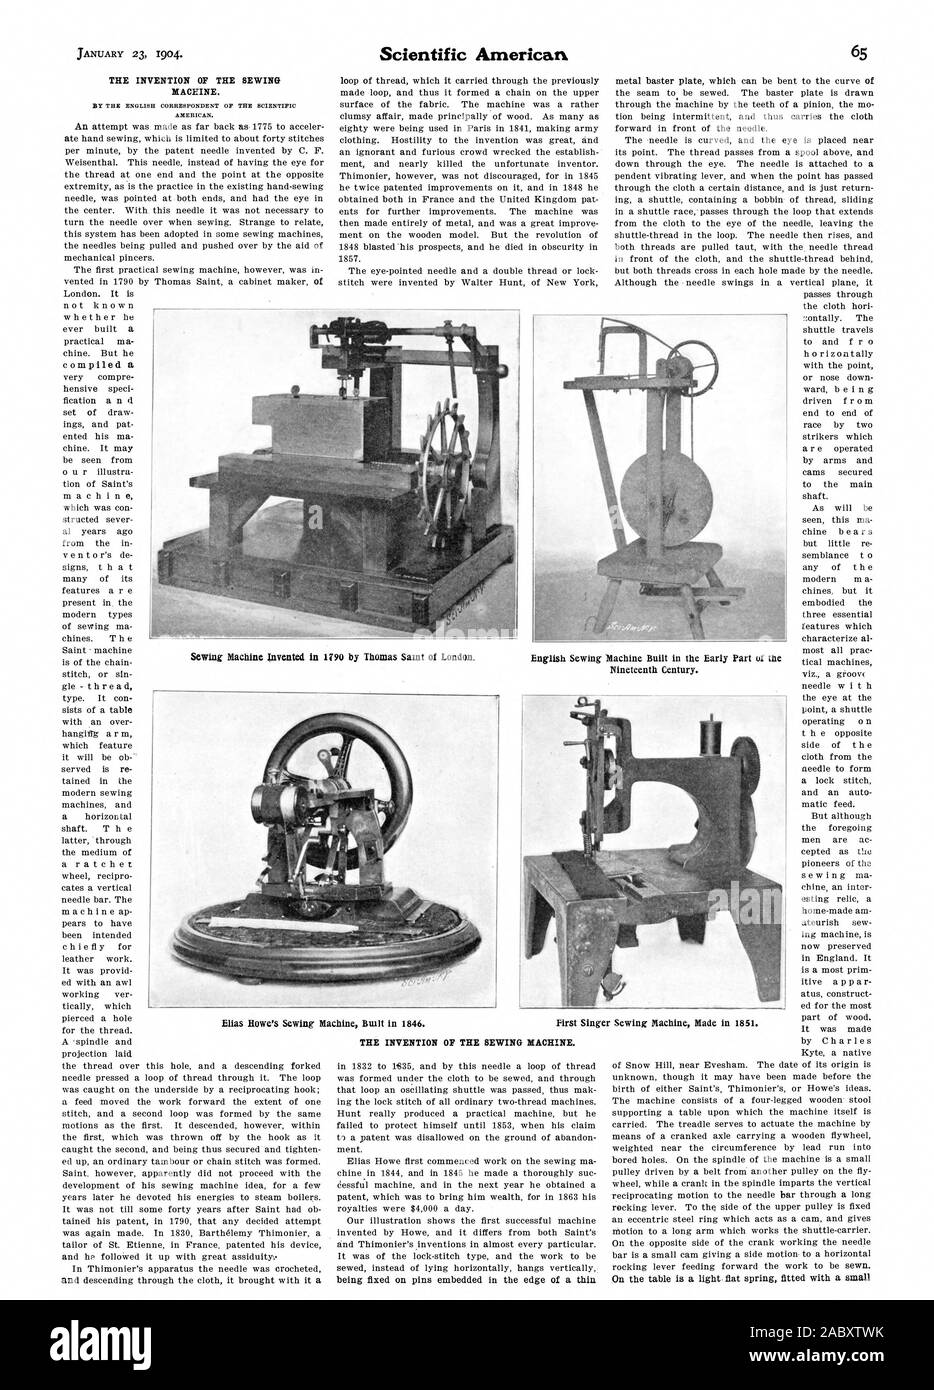 L invenzione della macchina per cucire. HT IL CORRISPONDENTE INGLESE DEL  AXRICAN scientifica. L invenzione della macchina da cucire, Scientific  American, 1904-01-23 Foto stock - Alamy